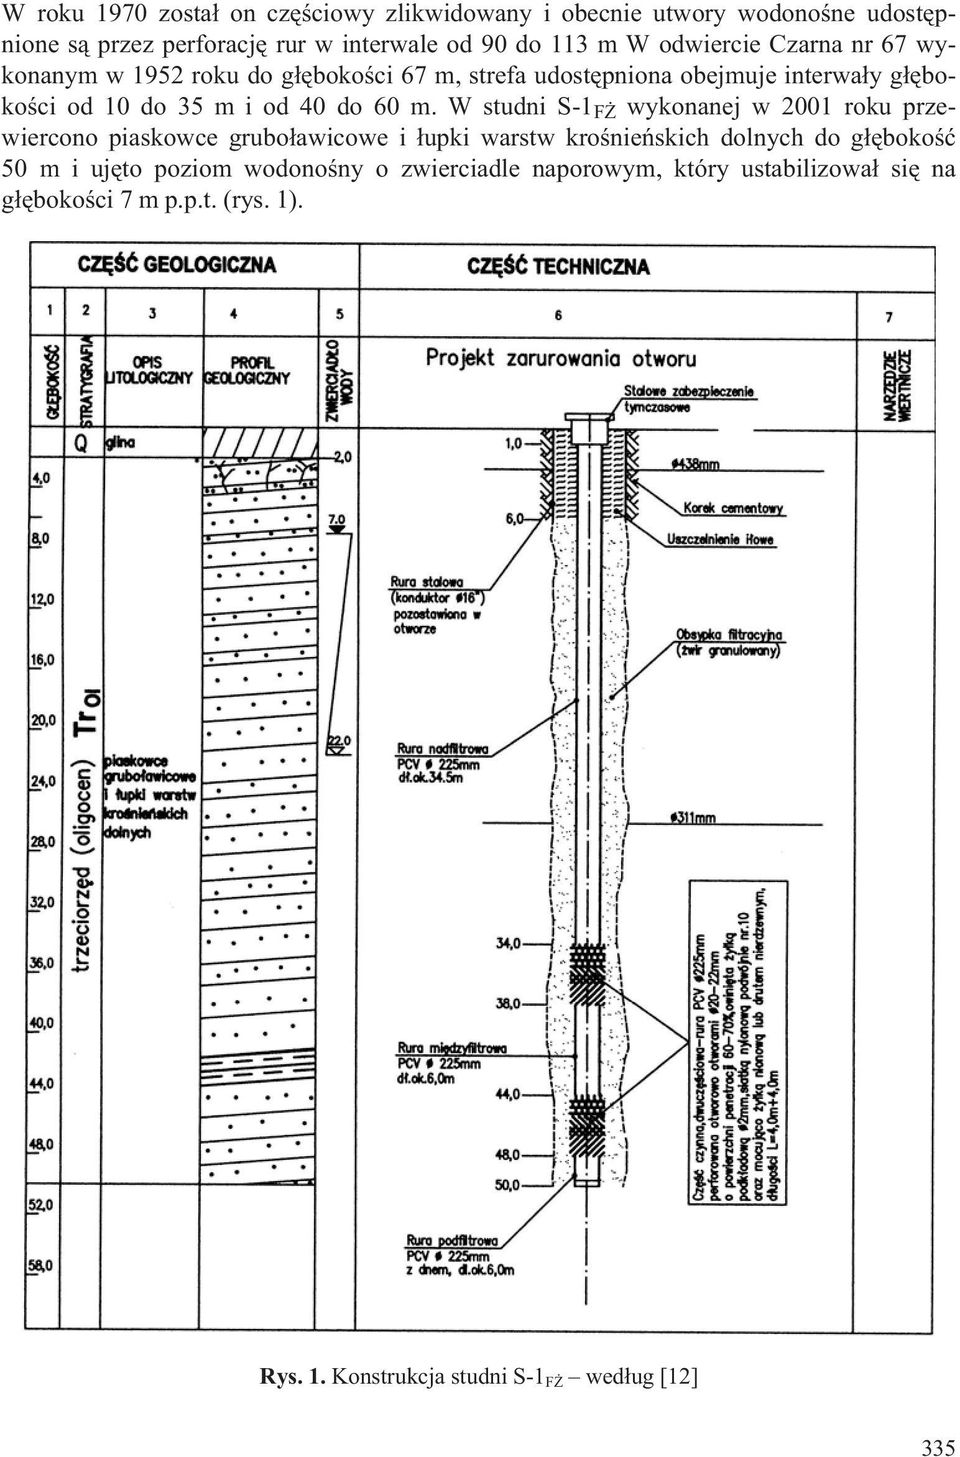 m. W studni S-1 F wykonanej w 2001 roku przewiercono piaskowce grubo³awicowe i ³upki warstw kroœnieñskich dolnych do g³êbokoœæ 50 m i ujêto